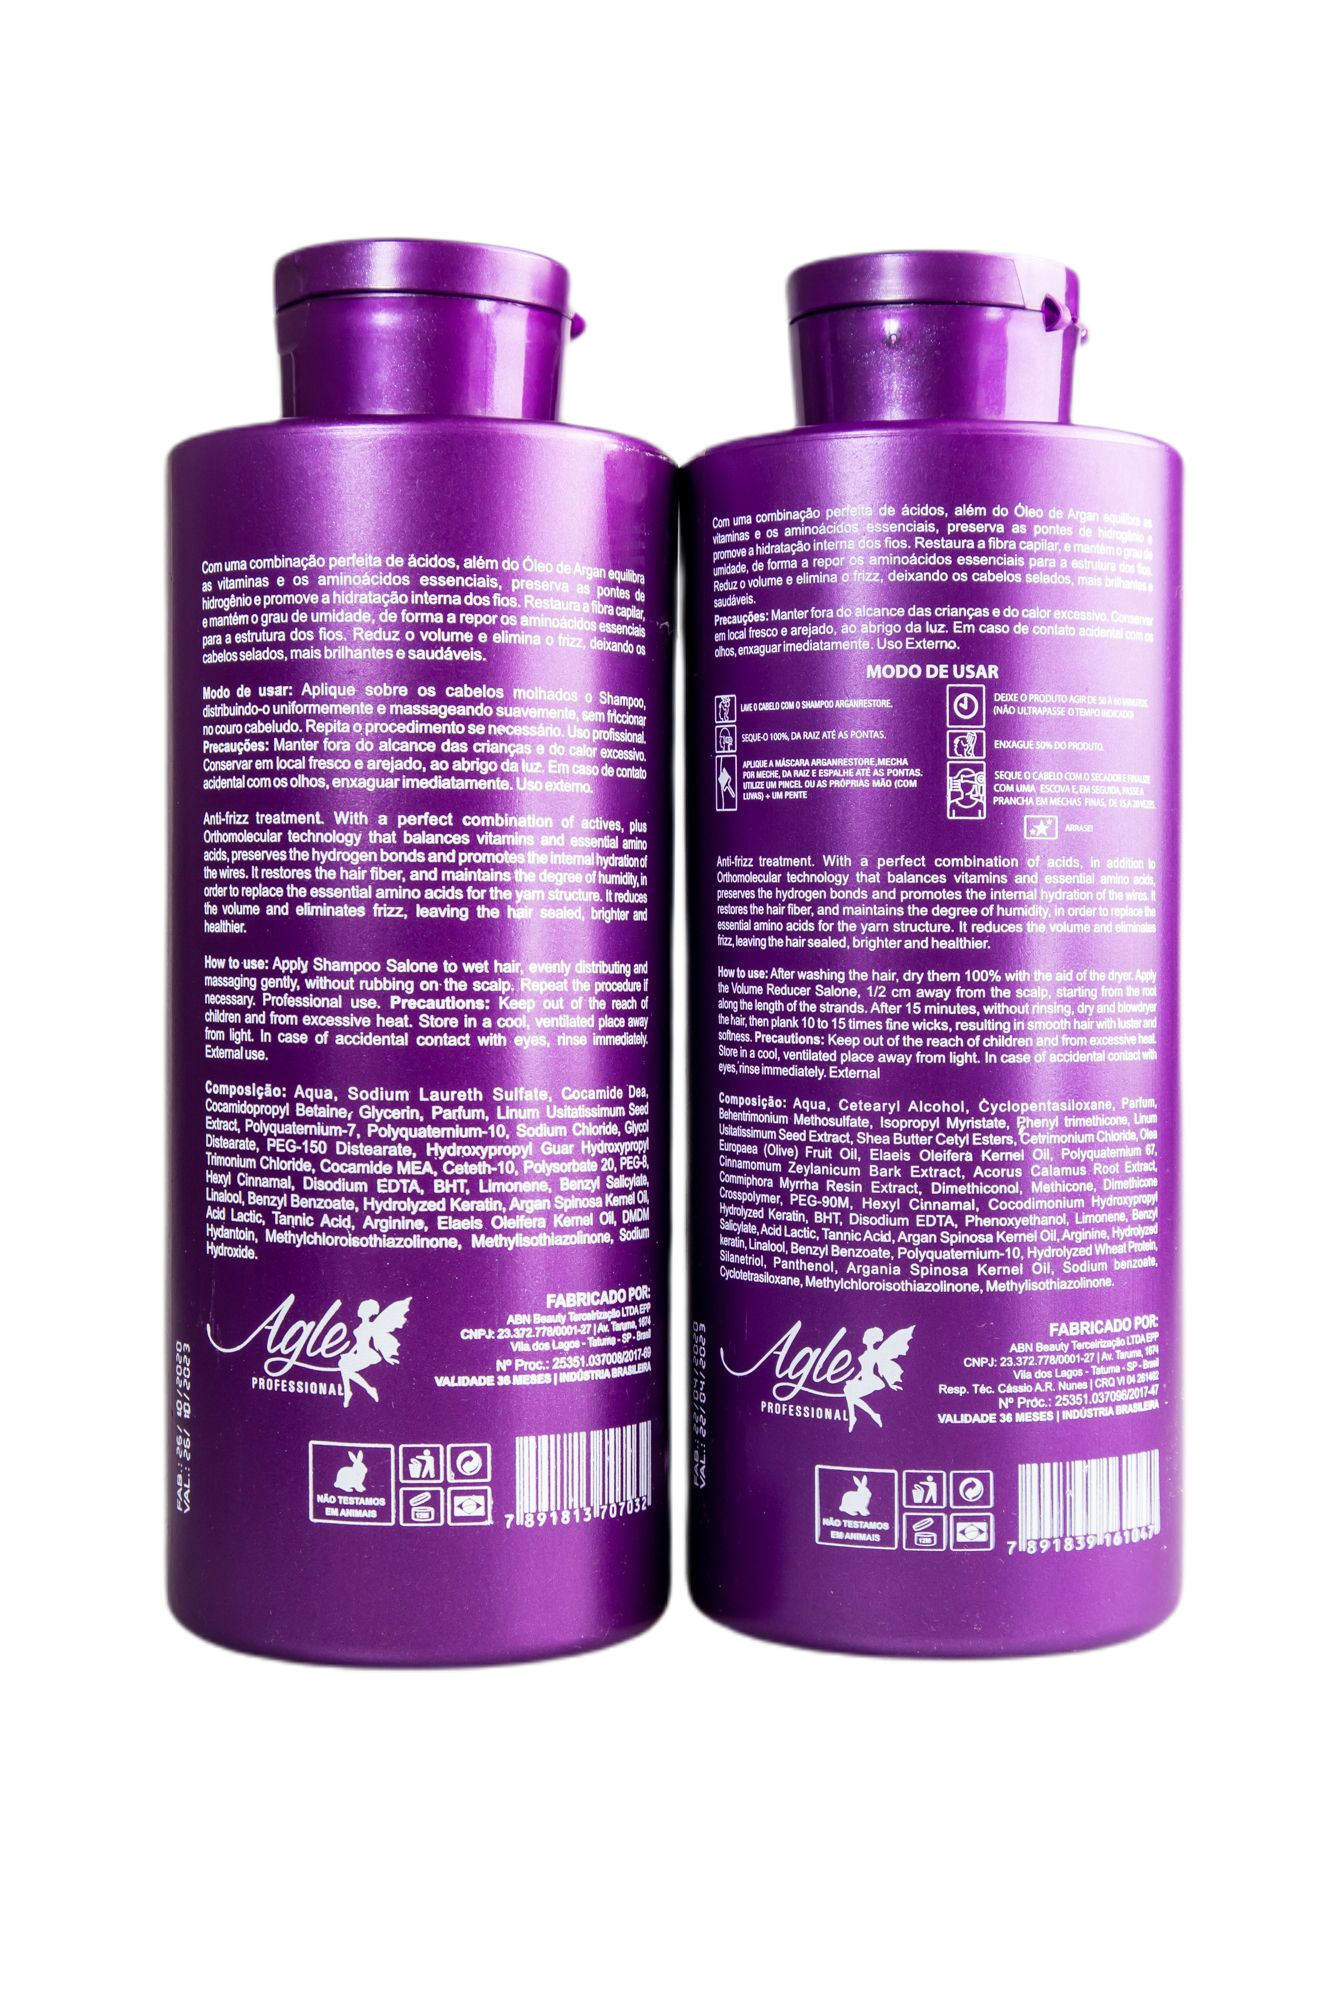 Agle Brazilian Keratin Treatment Professional Keratin Tannic Argan Restore Progressive Smoothing Kit 2x1L - Agle